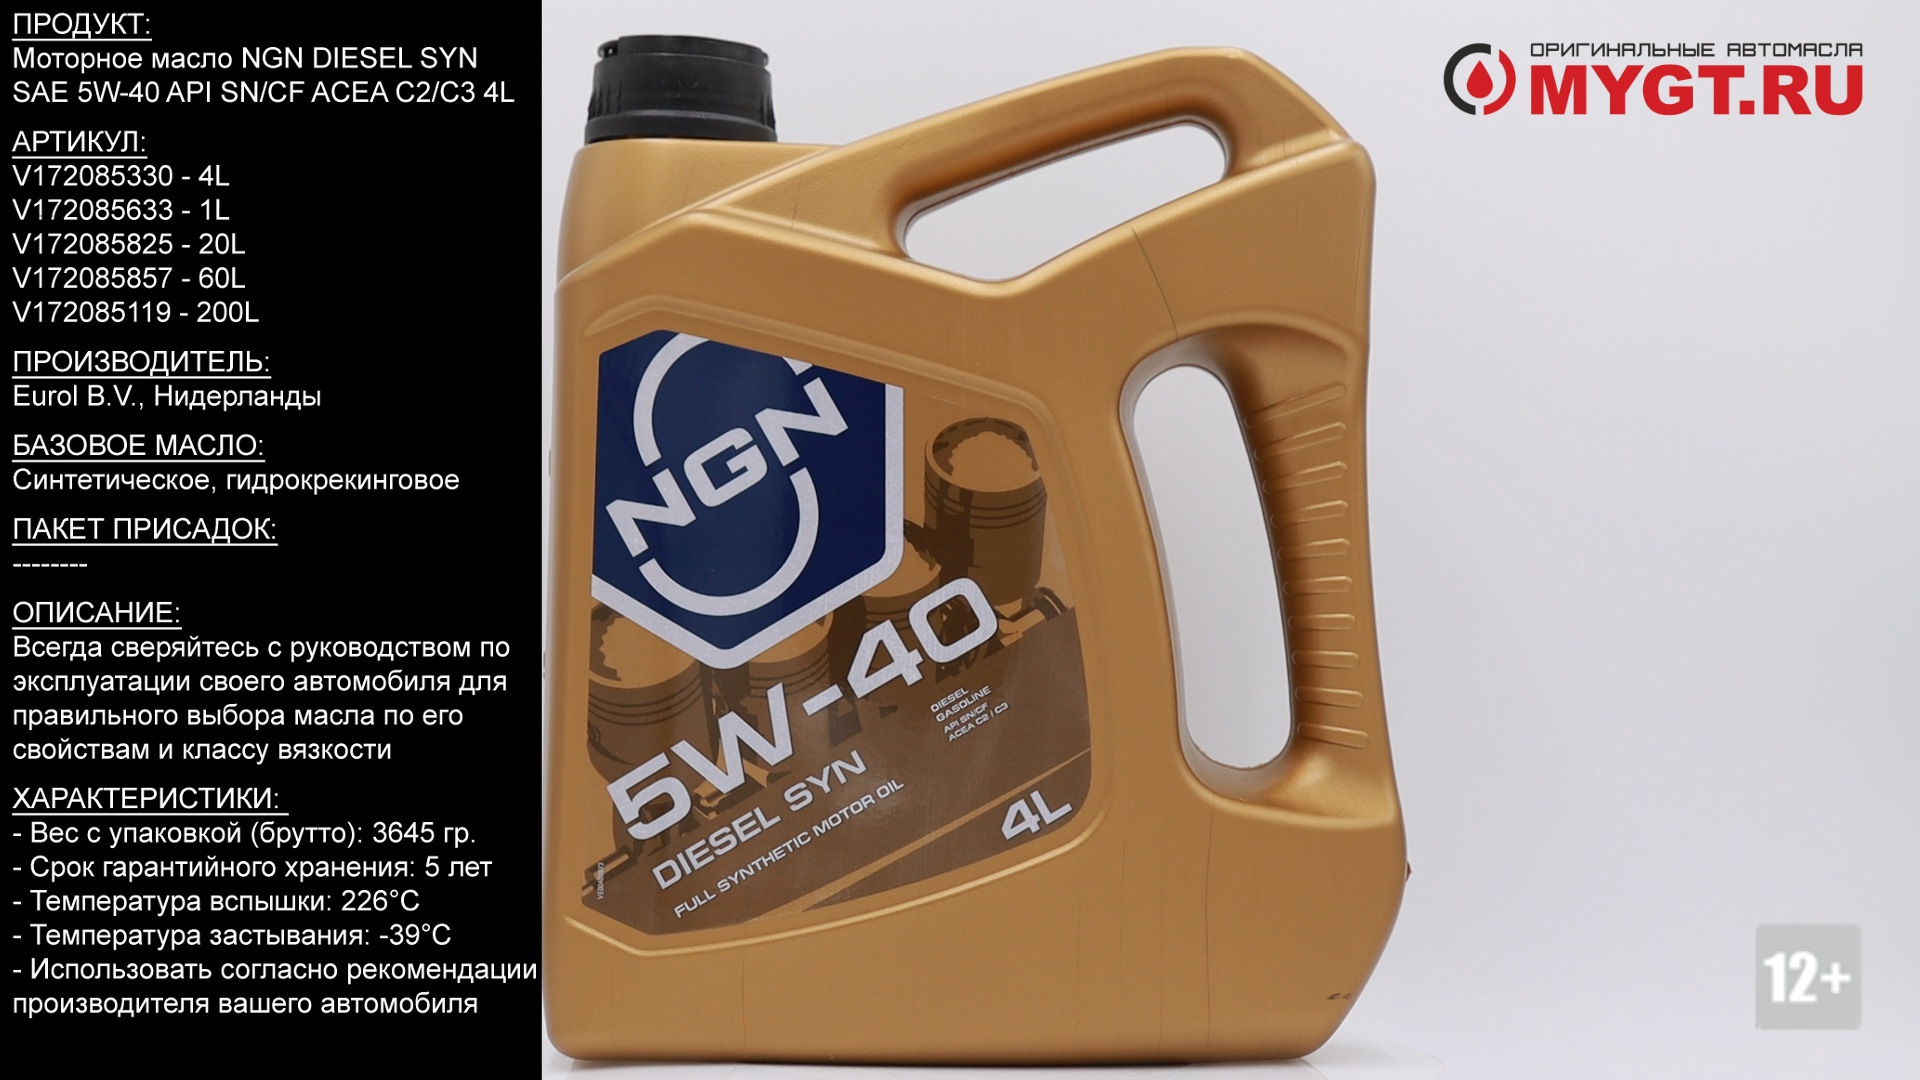 Моторное масло acea c2. Моторное масло NGN 5w40. Масло NGN 5w40 дизель. 5w-40 Diesel syn CF/SN 4л NGN. NGN Diesel syn 5w-40.